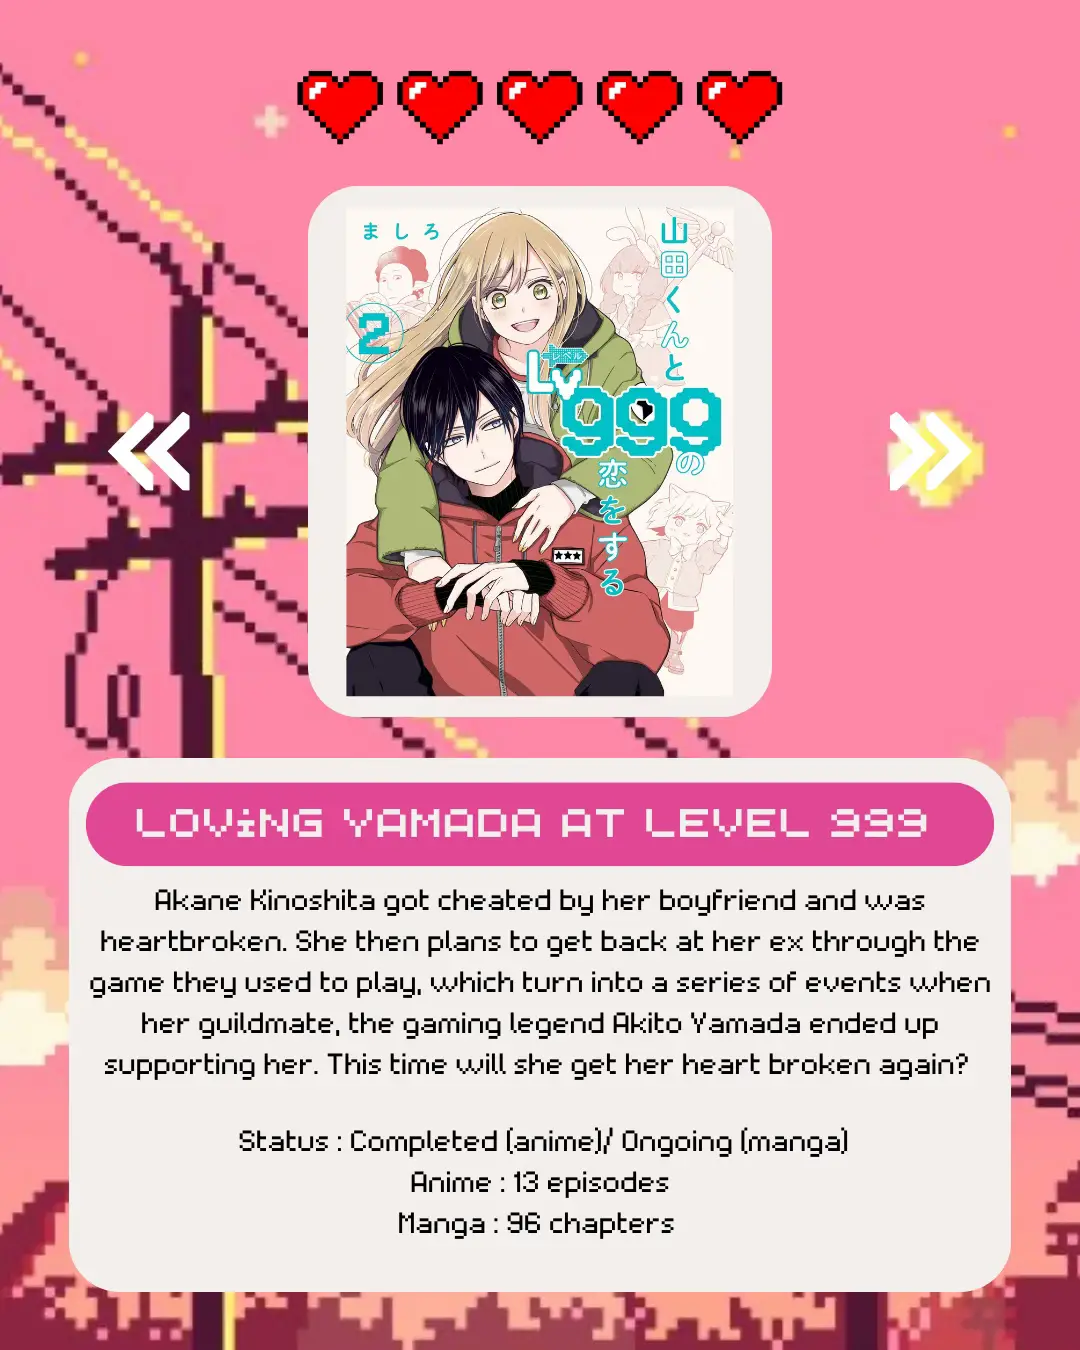 yamada kun and the seven witches romance anime recommendation. A story, yamada kun and the seven witches manga